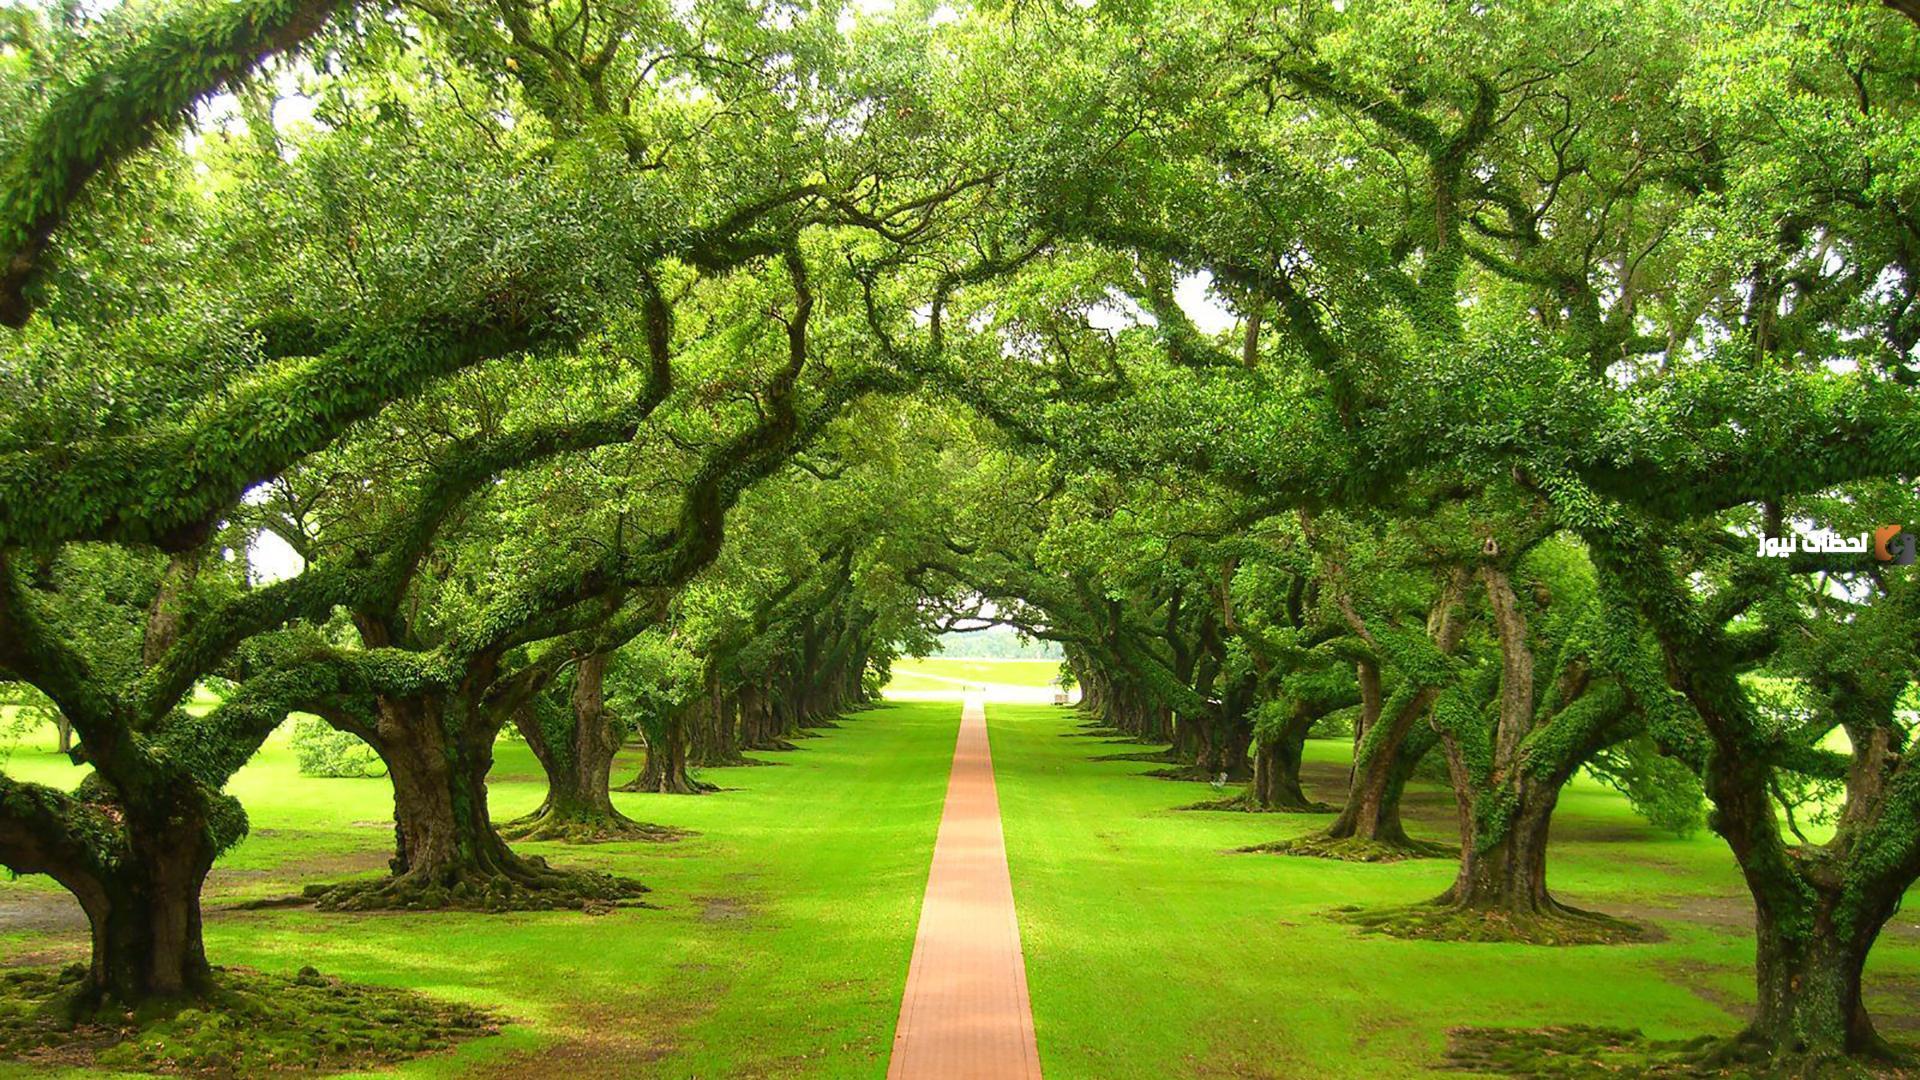 De mooiste visioenen: interpretatie van groene bomen in een droom: wat geven ze aan? - Interpretatie van dromen online